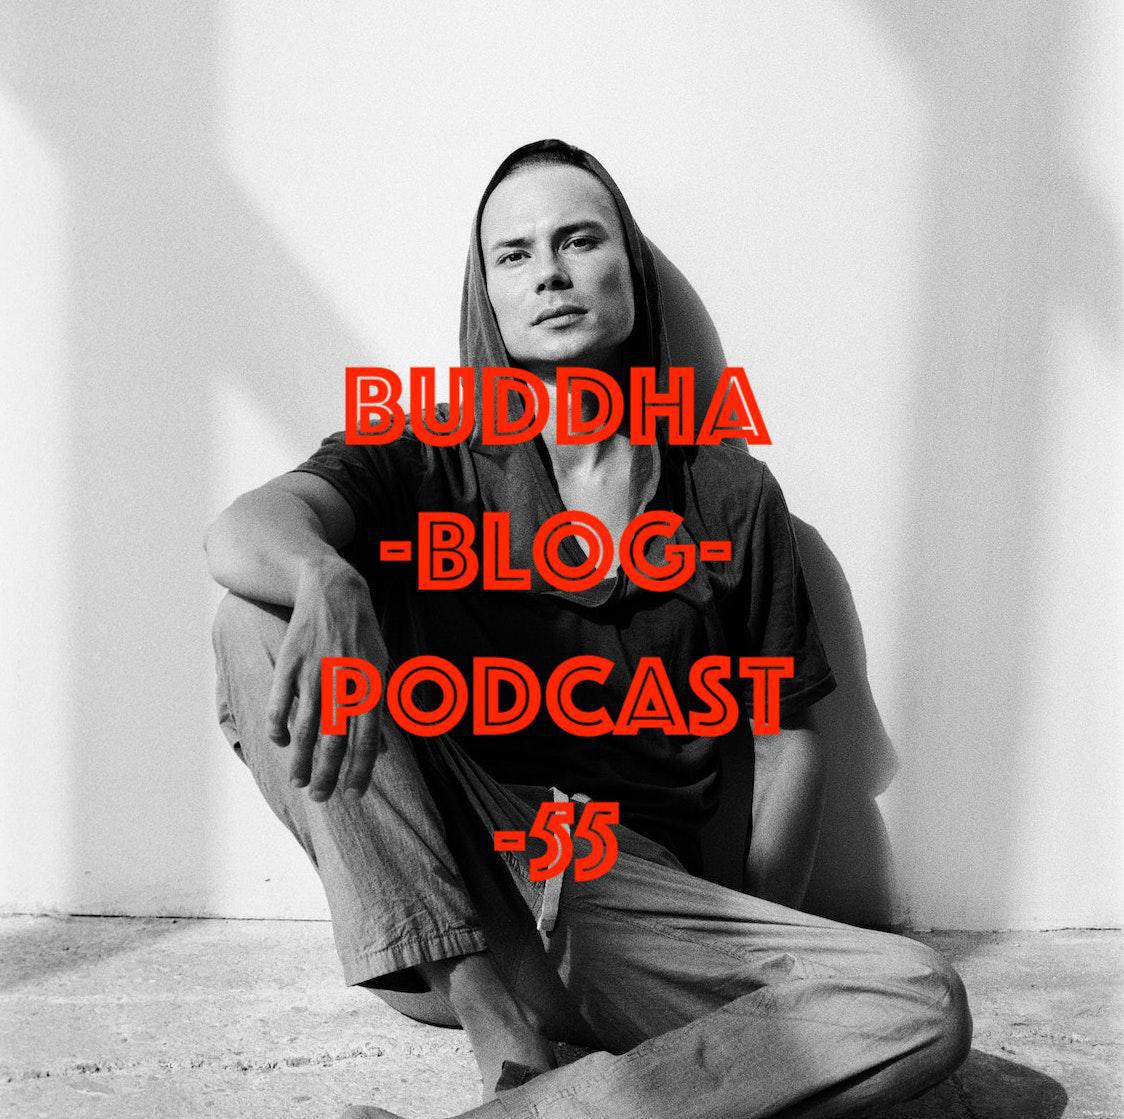 Buddha-Blog-Podcast Folge 55